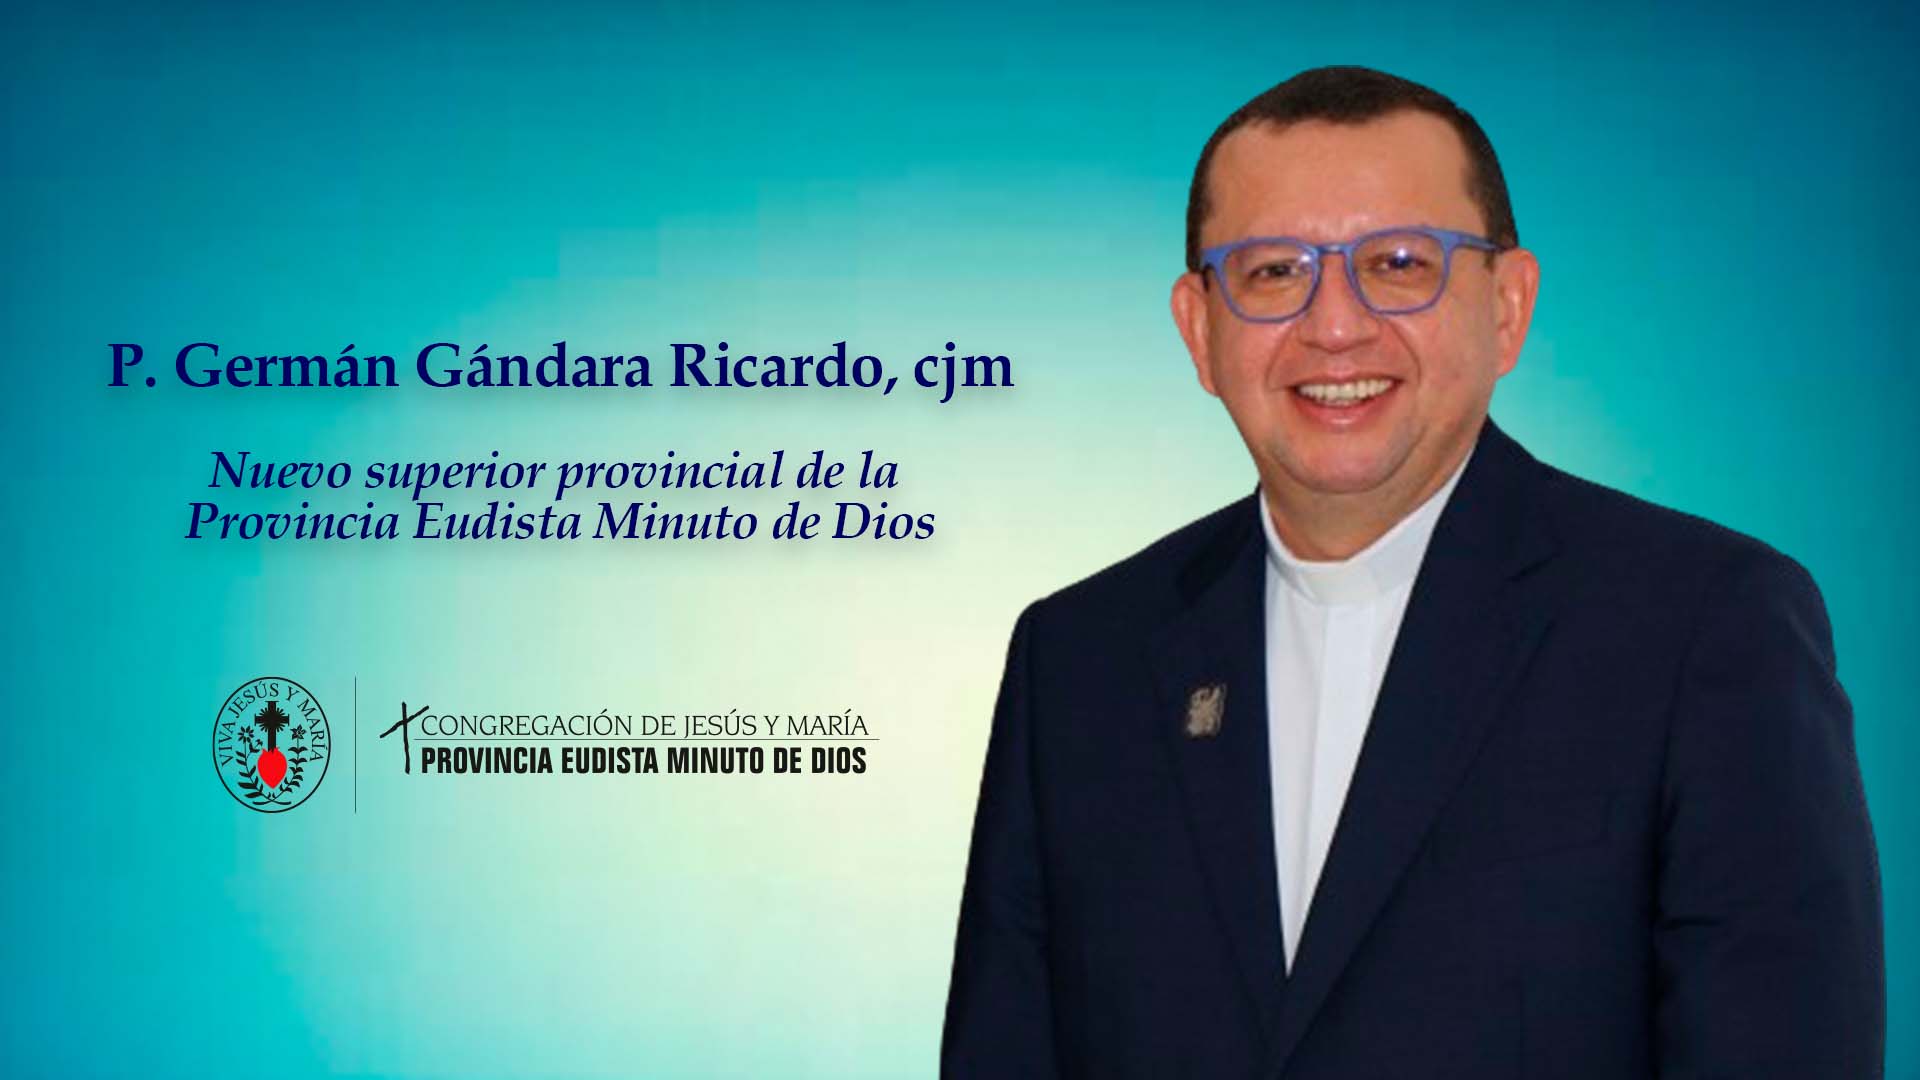 Padre Germán Gándara cjm fue nombrado Superior Provincial de la Provincia Eudista Minuto de Dios